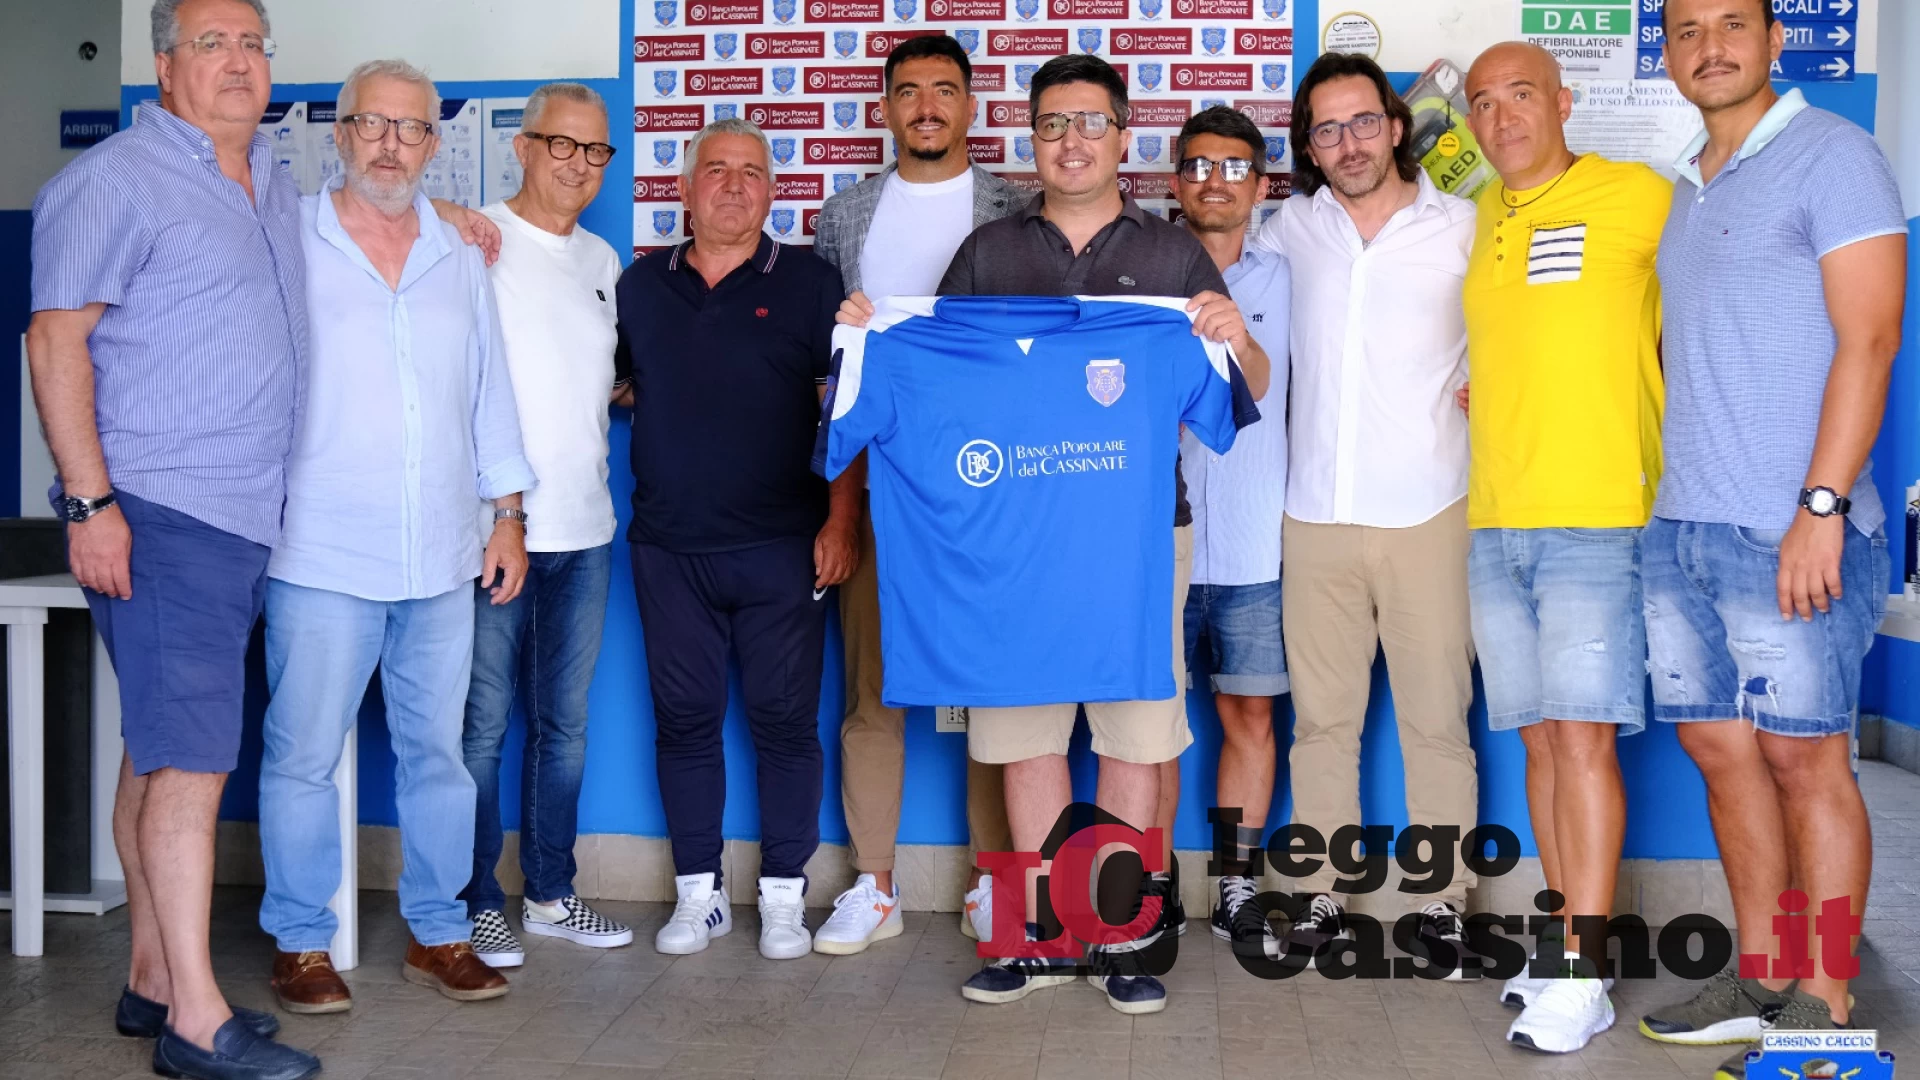 Francesco Iemma è il nuovo responsabile del Settore giovanile dell’ASD Cassino Calcio